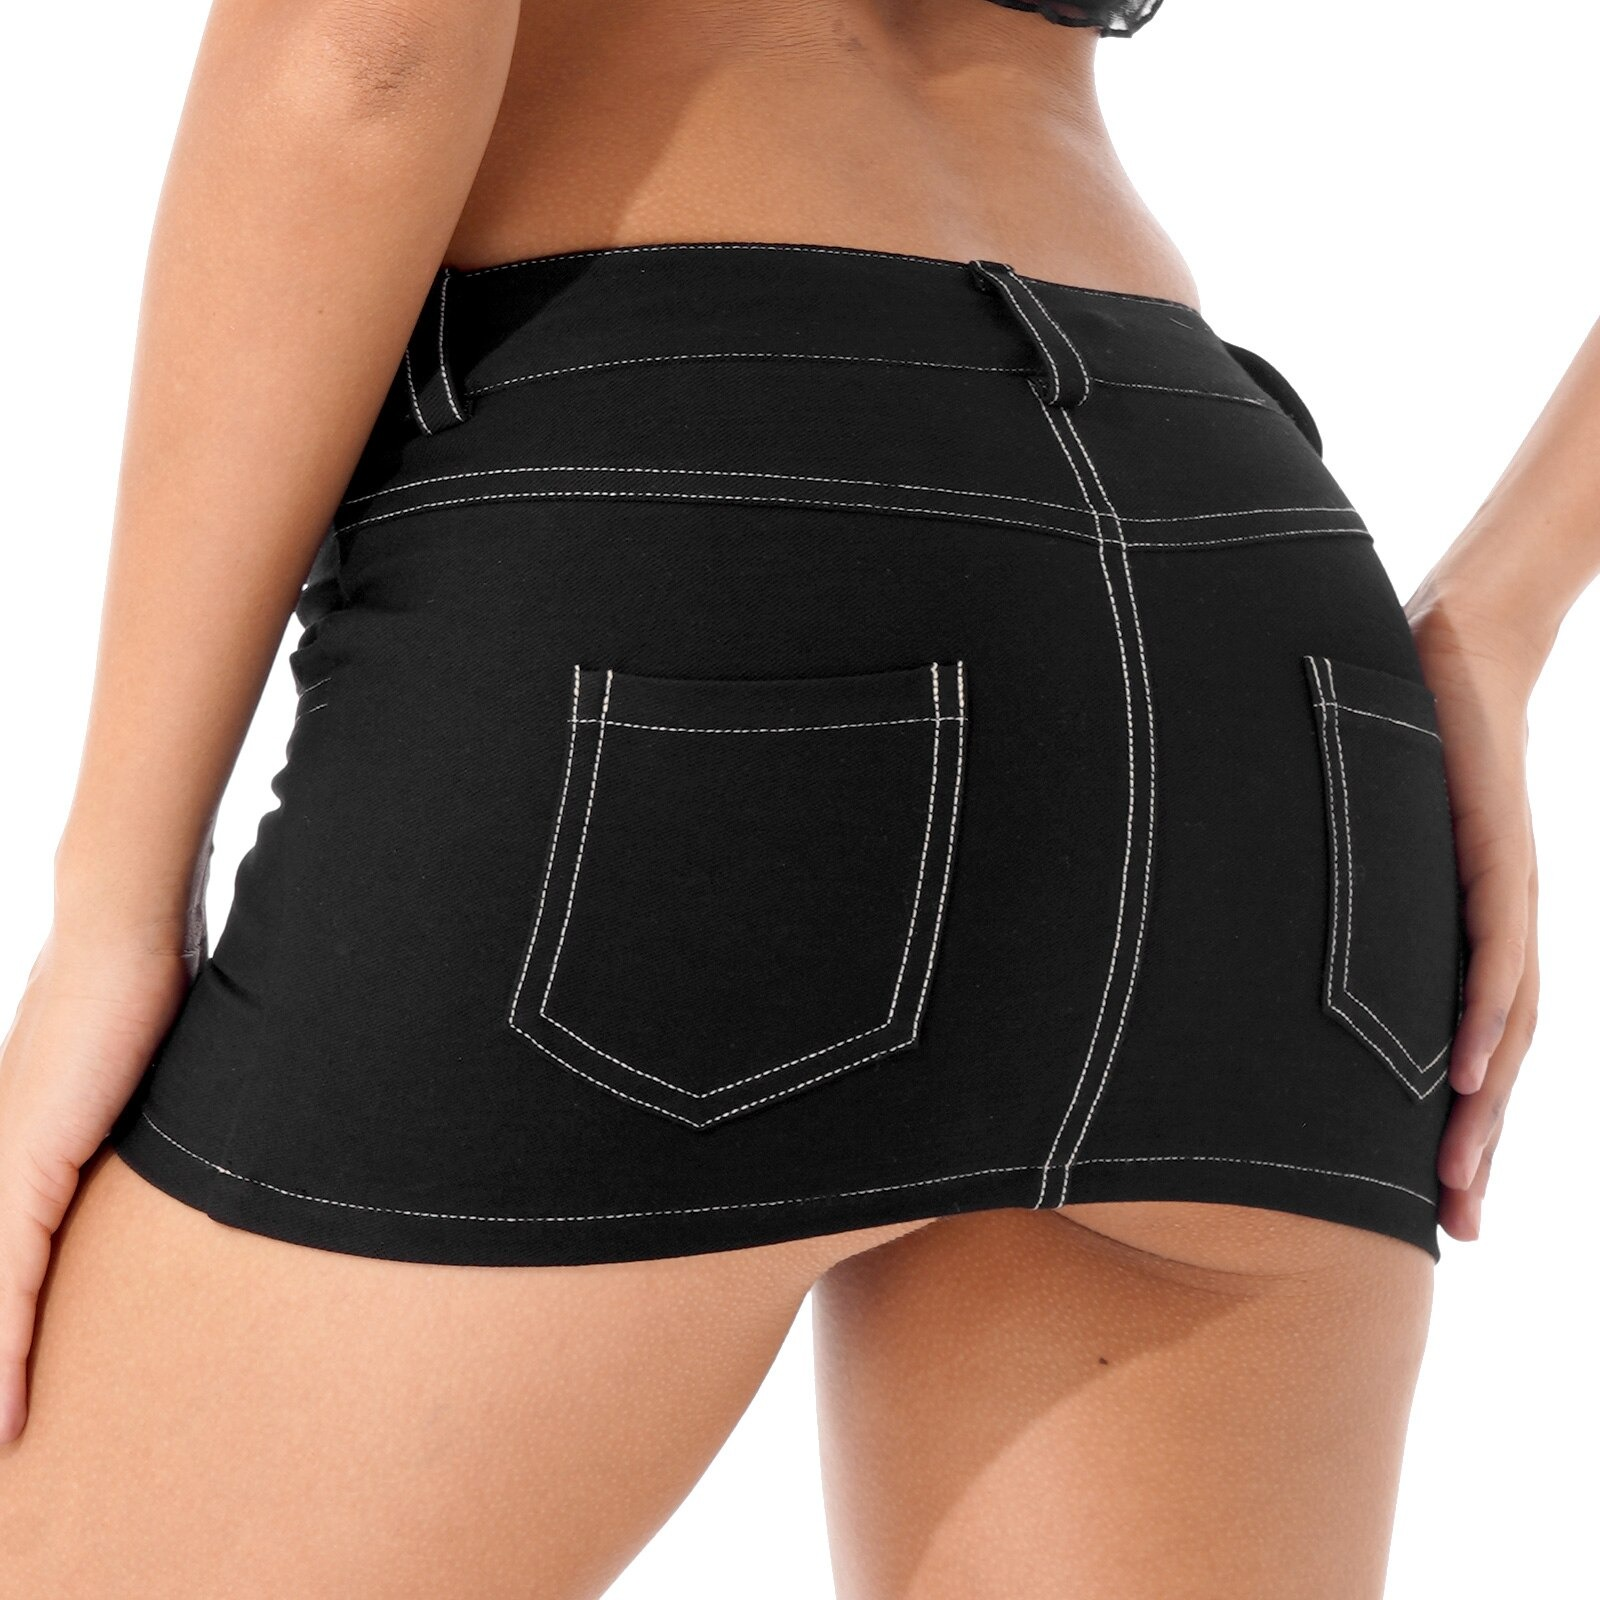 Sexy Women's Short Denim Skirt / Rock Style Black Female Skirt / Mini Skirt With Pockets For Girls - HARD'N'HEAVY